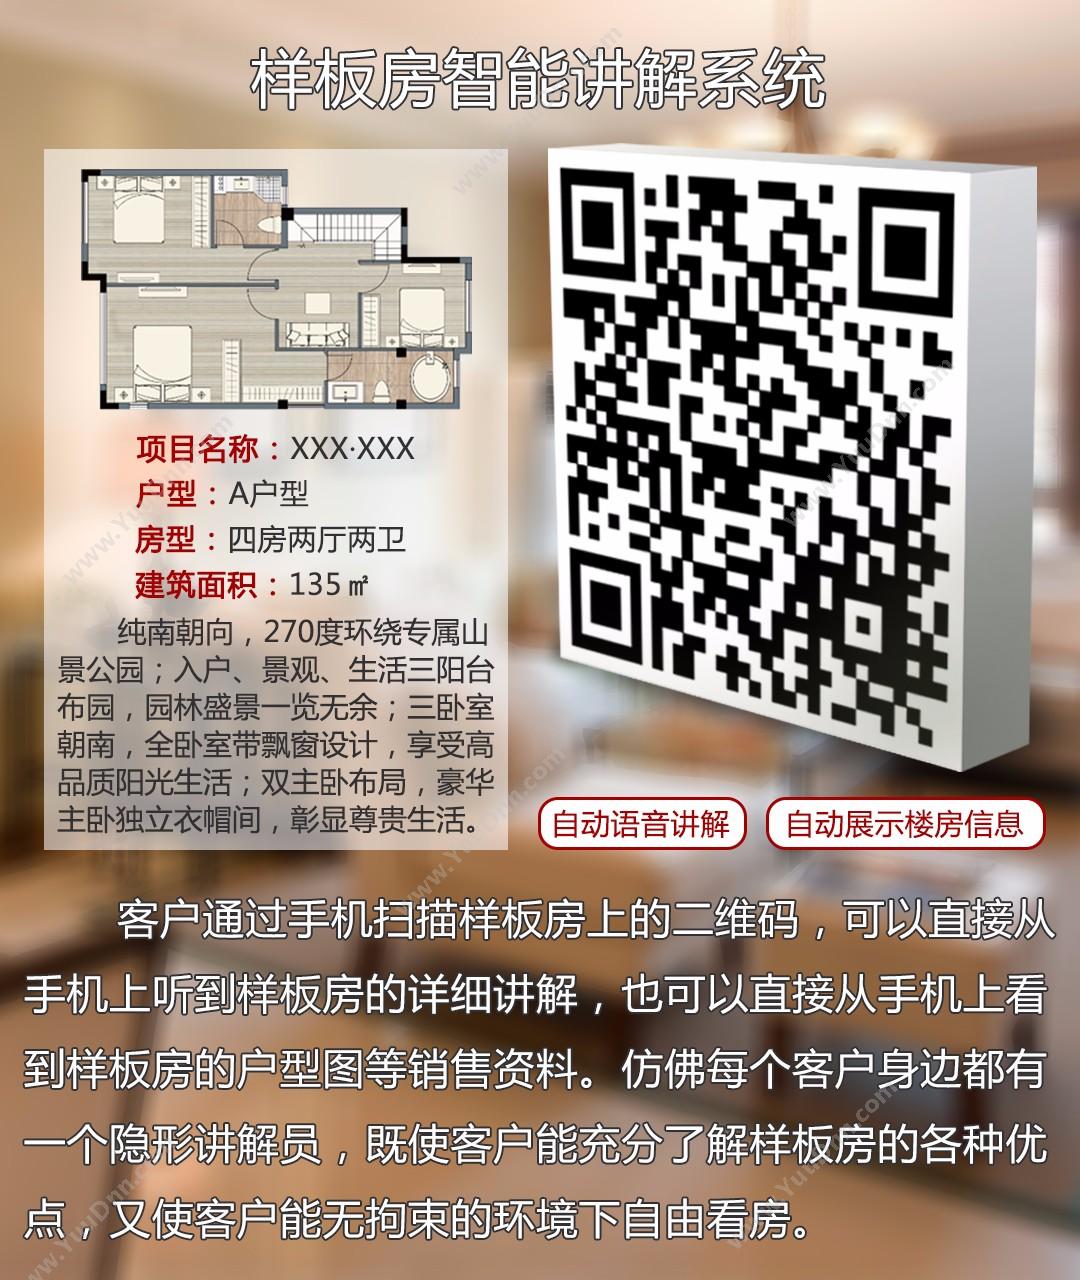 广州壹传诚文化传播有限公司 VR一体机——禁毒教育模拟（家庭伤害） 其它软件